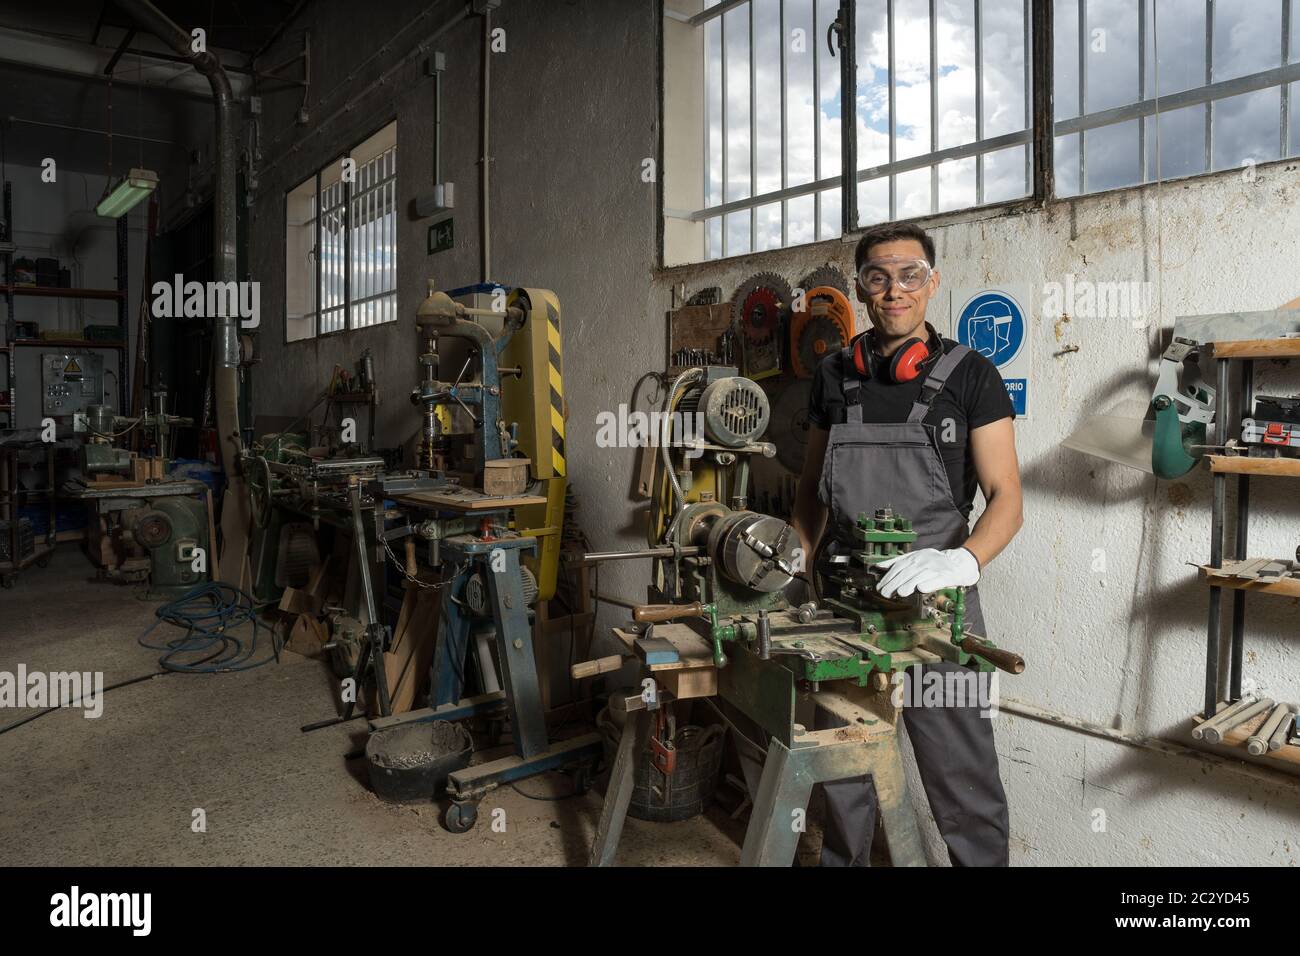 Travailleur debout avec un équipement de protection regardant la caméra sourire dans une usine. Photo intermédiaire. Banque D'Images